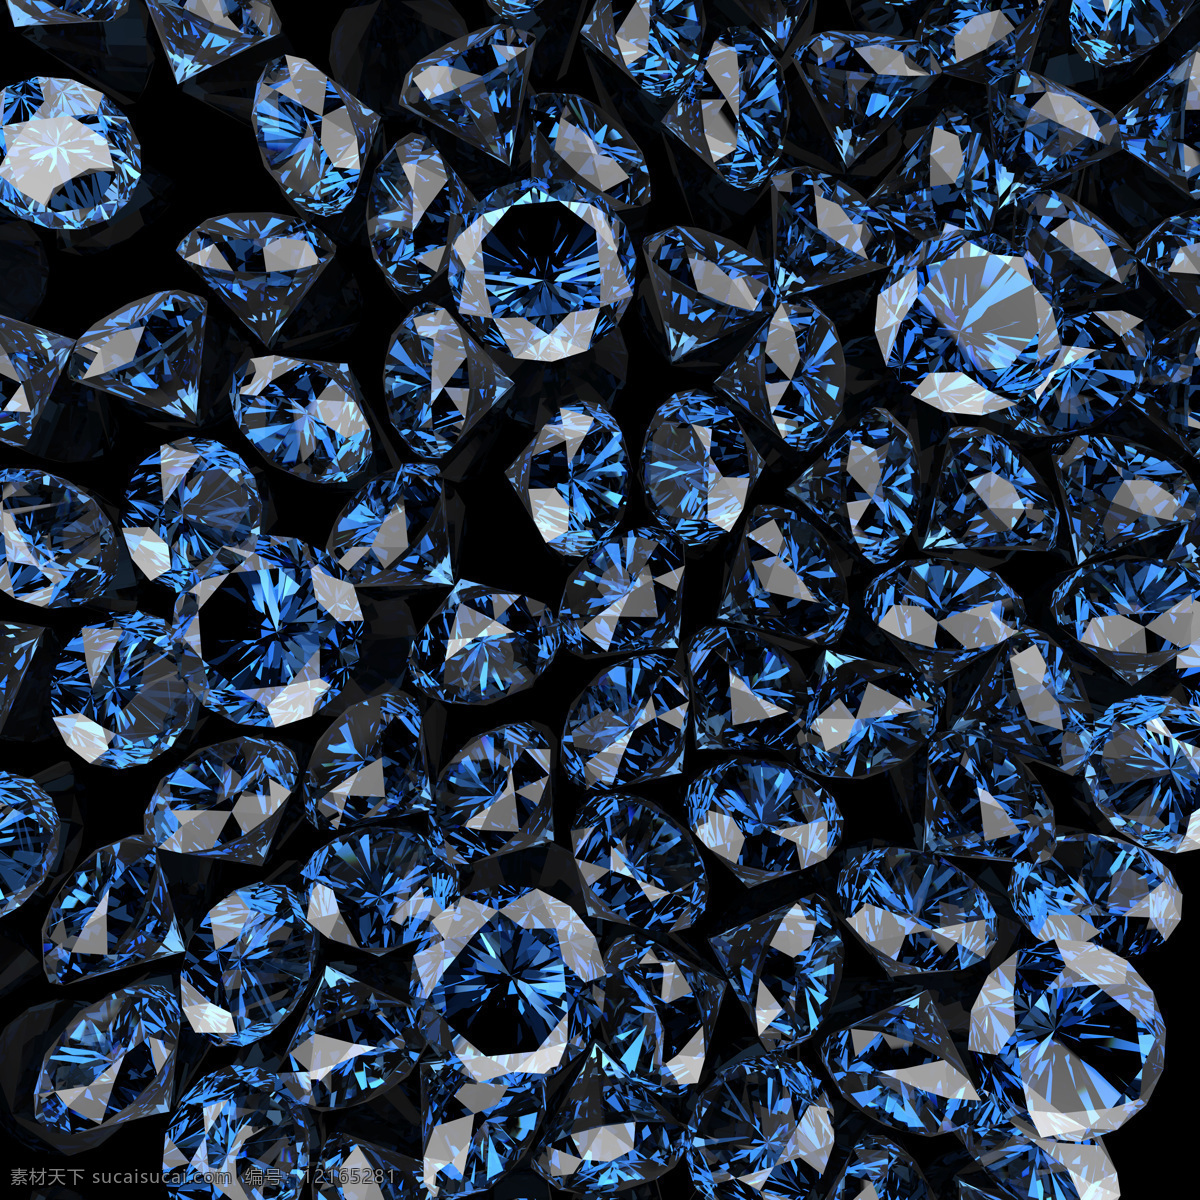 钻石链子 钻石图片模板 发光的钻石 美丽的钻石 蓝宝石 宝石钻石 钻石广告 3d设计 黑色